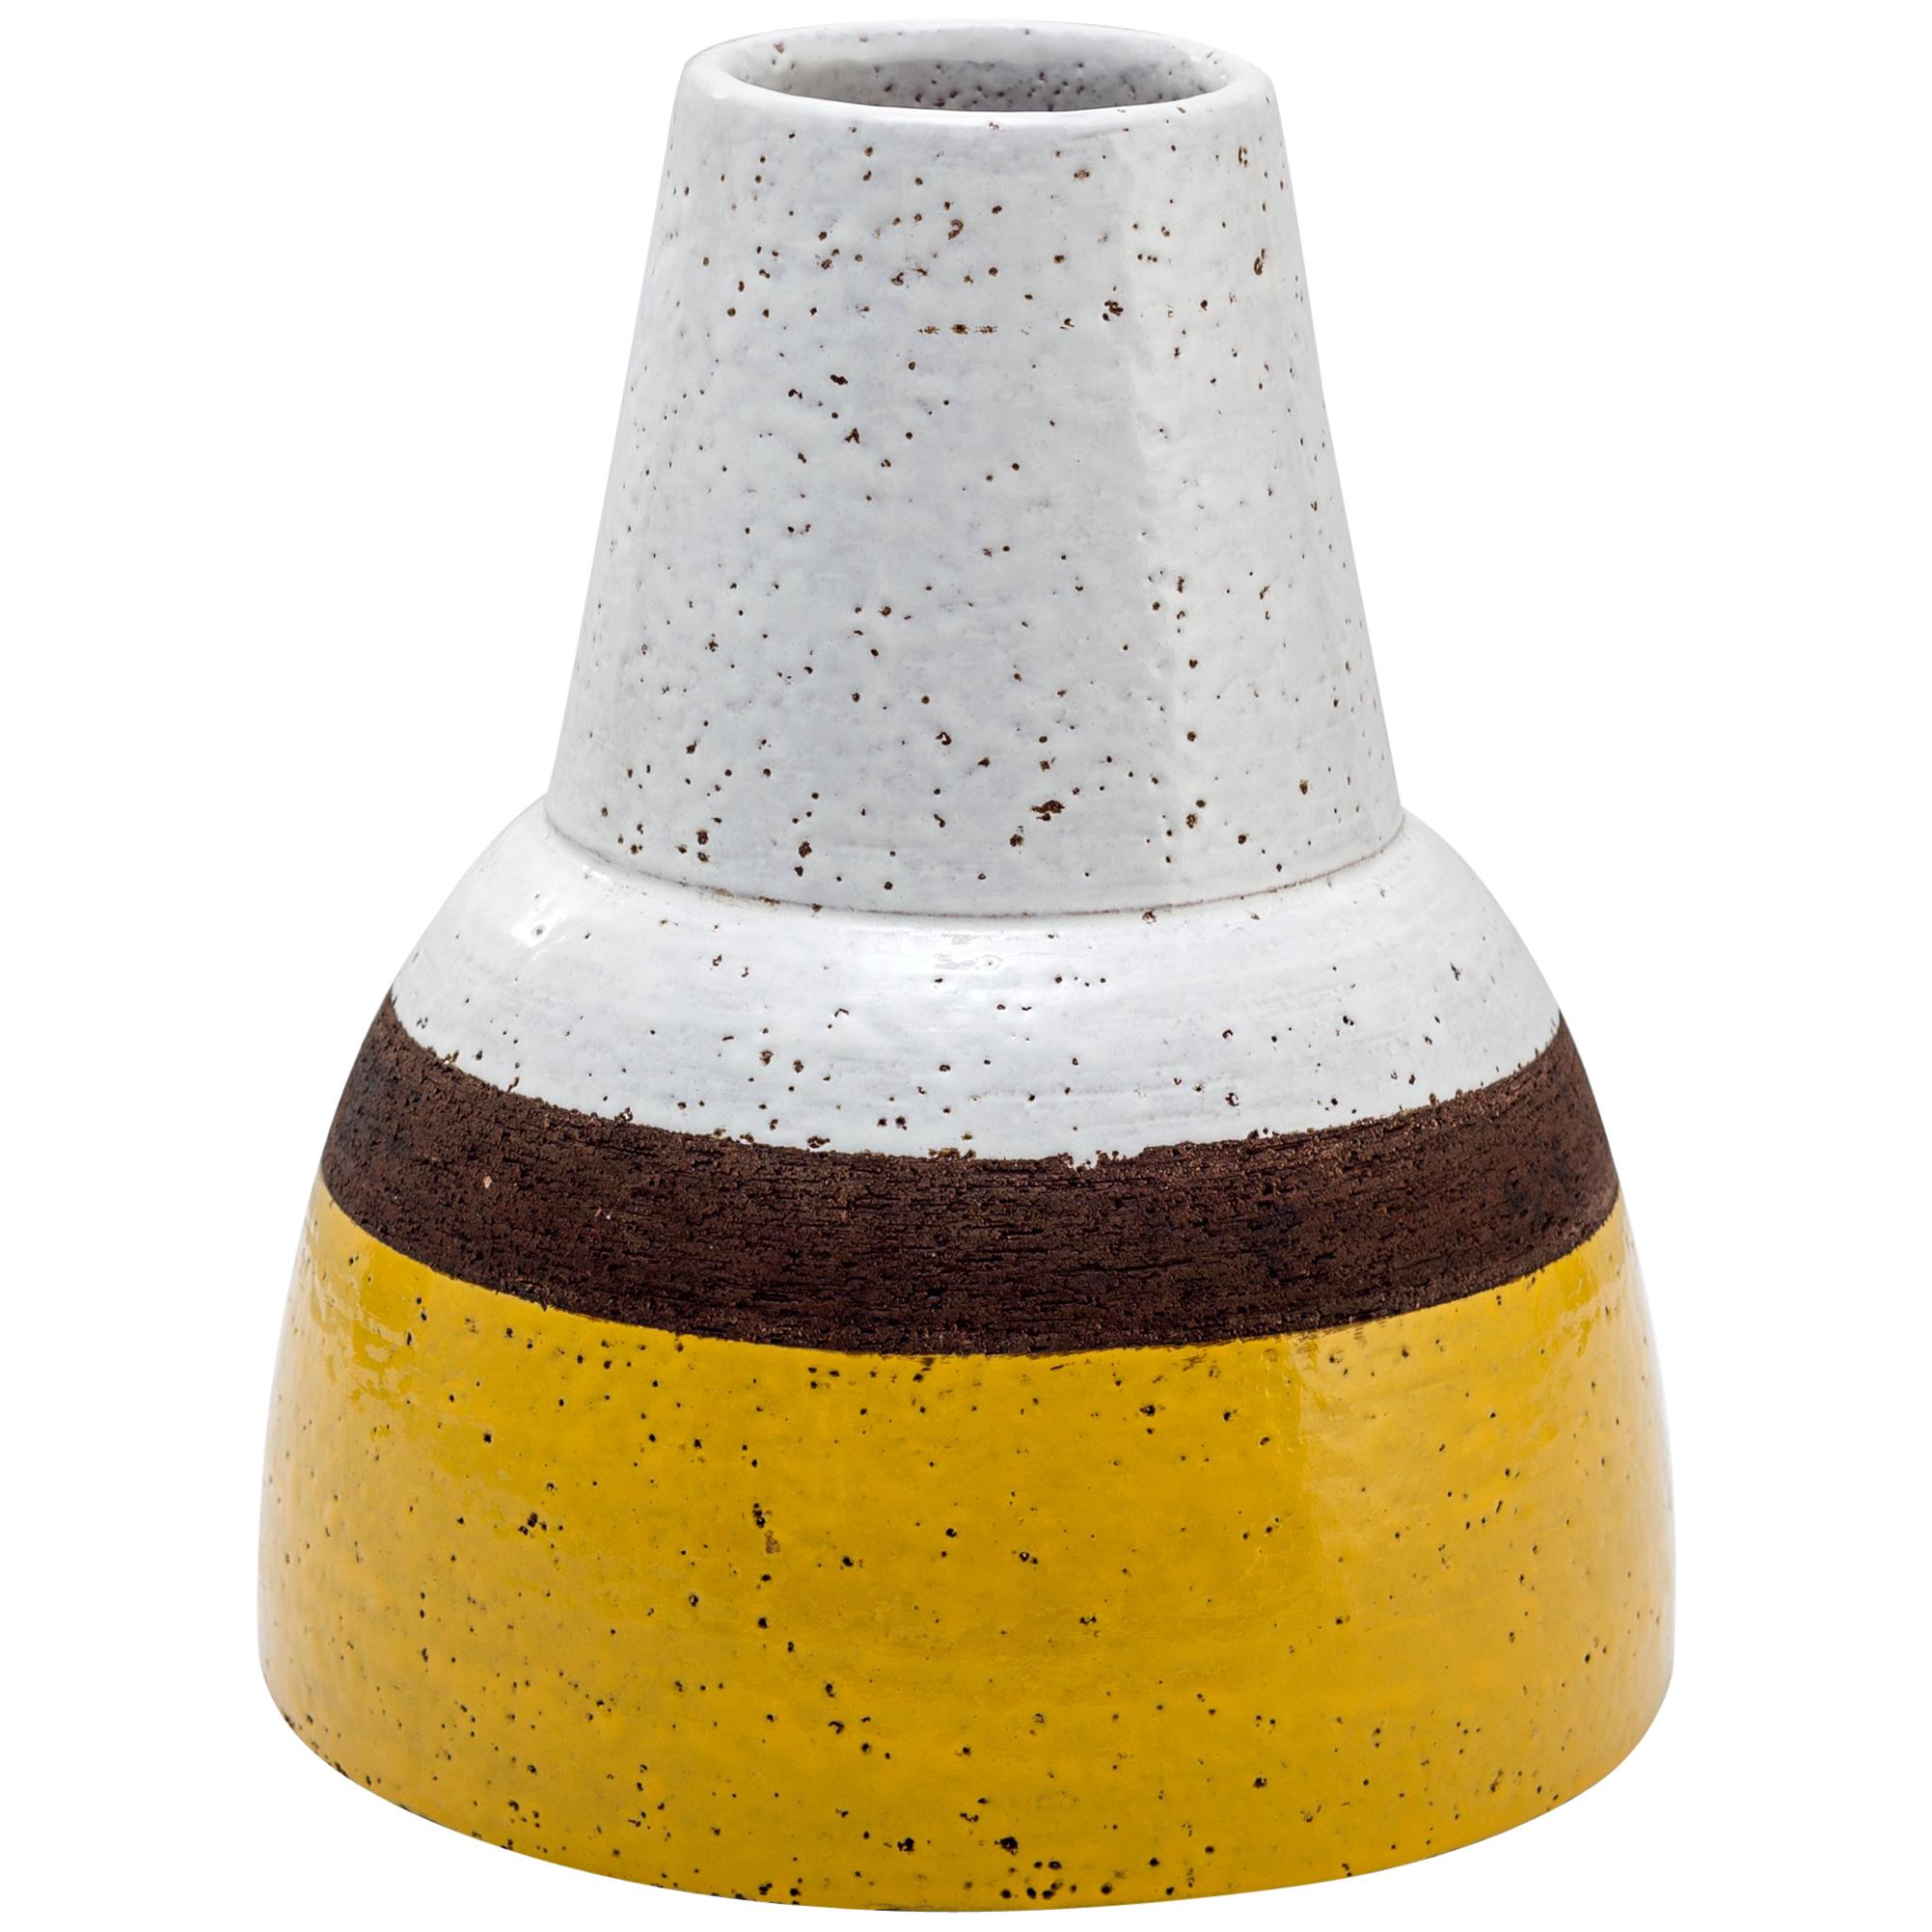 Ettore Sottsass "Ceramiche di Lava" Vase, Limited Edition - Italy, 1959-2003